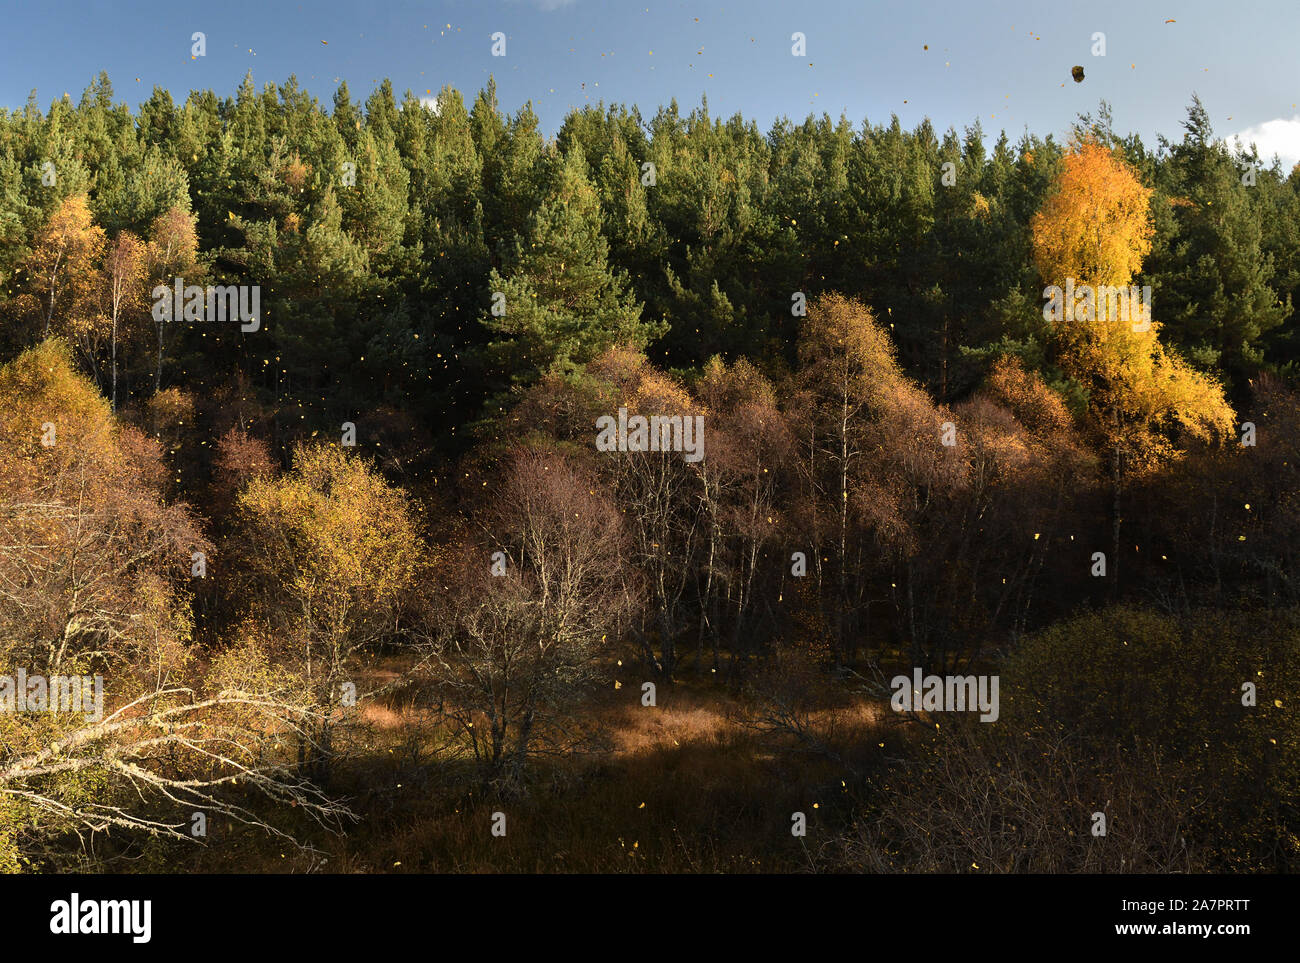 Hojas de otoño cayendo;ex highland railway line;Grantown en Spey;highlands;Escocia Foto de stock